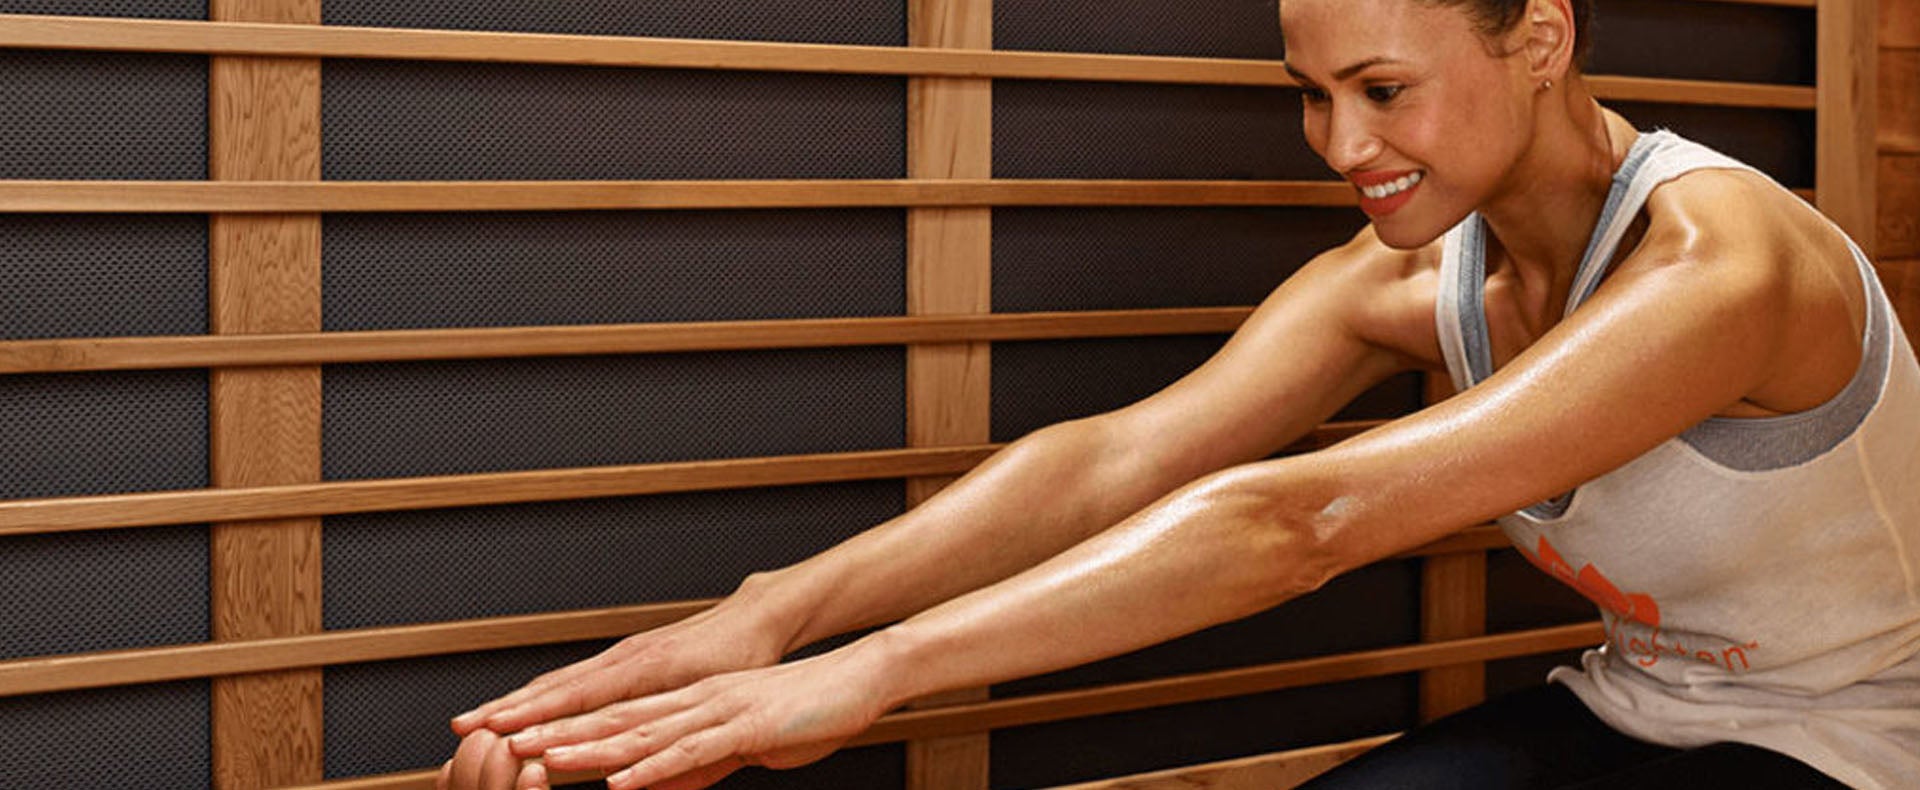 Stretch in sauna